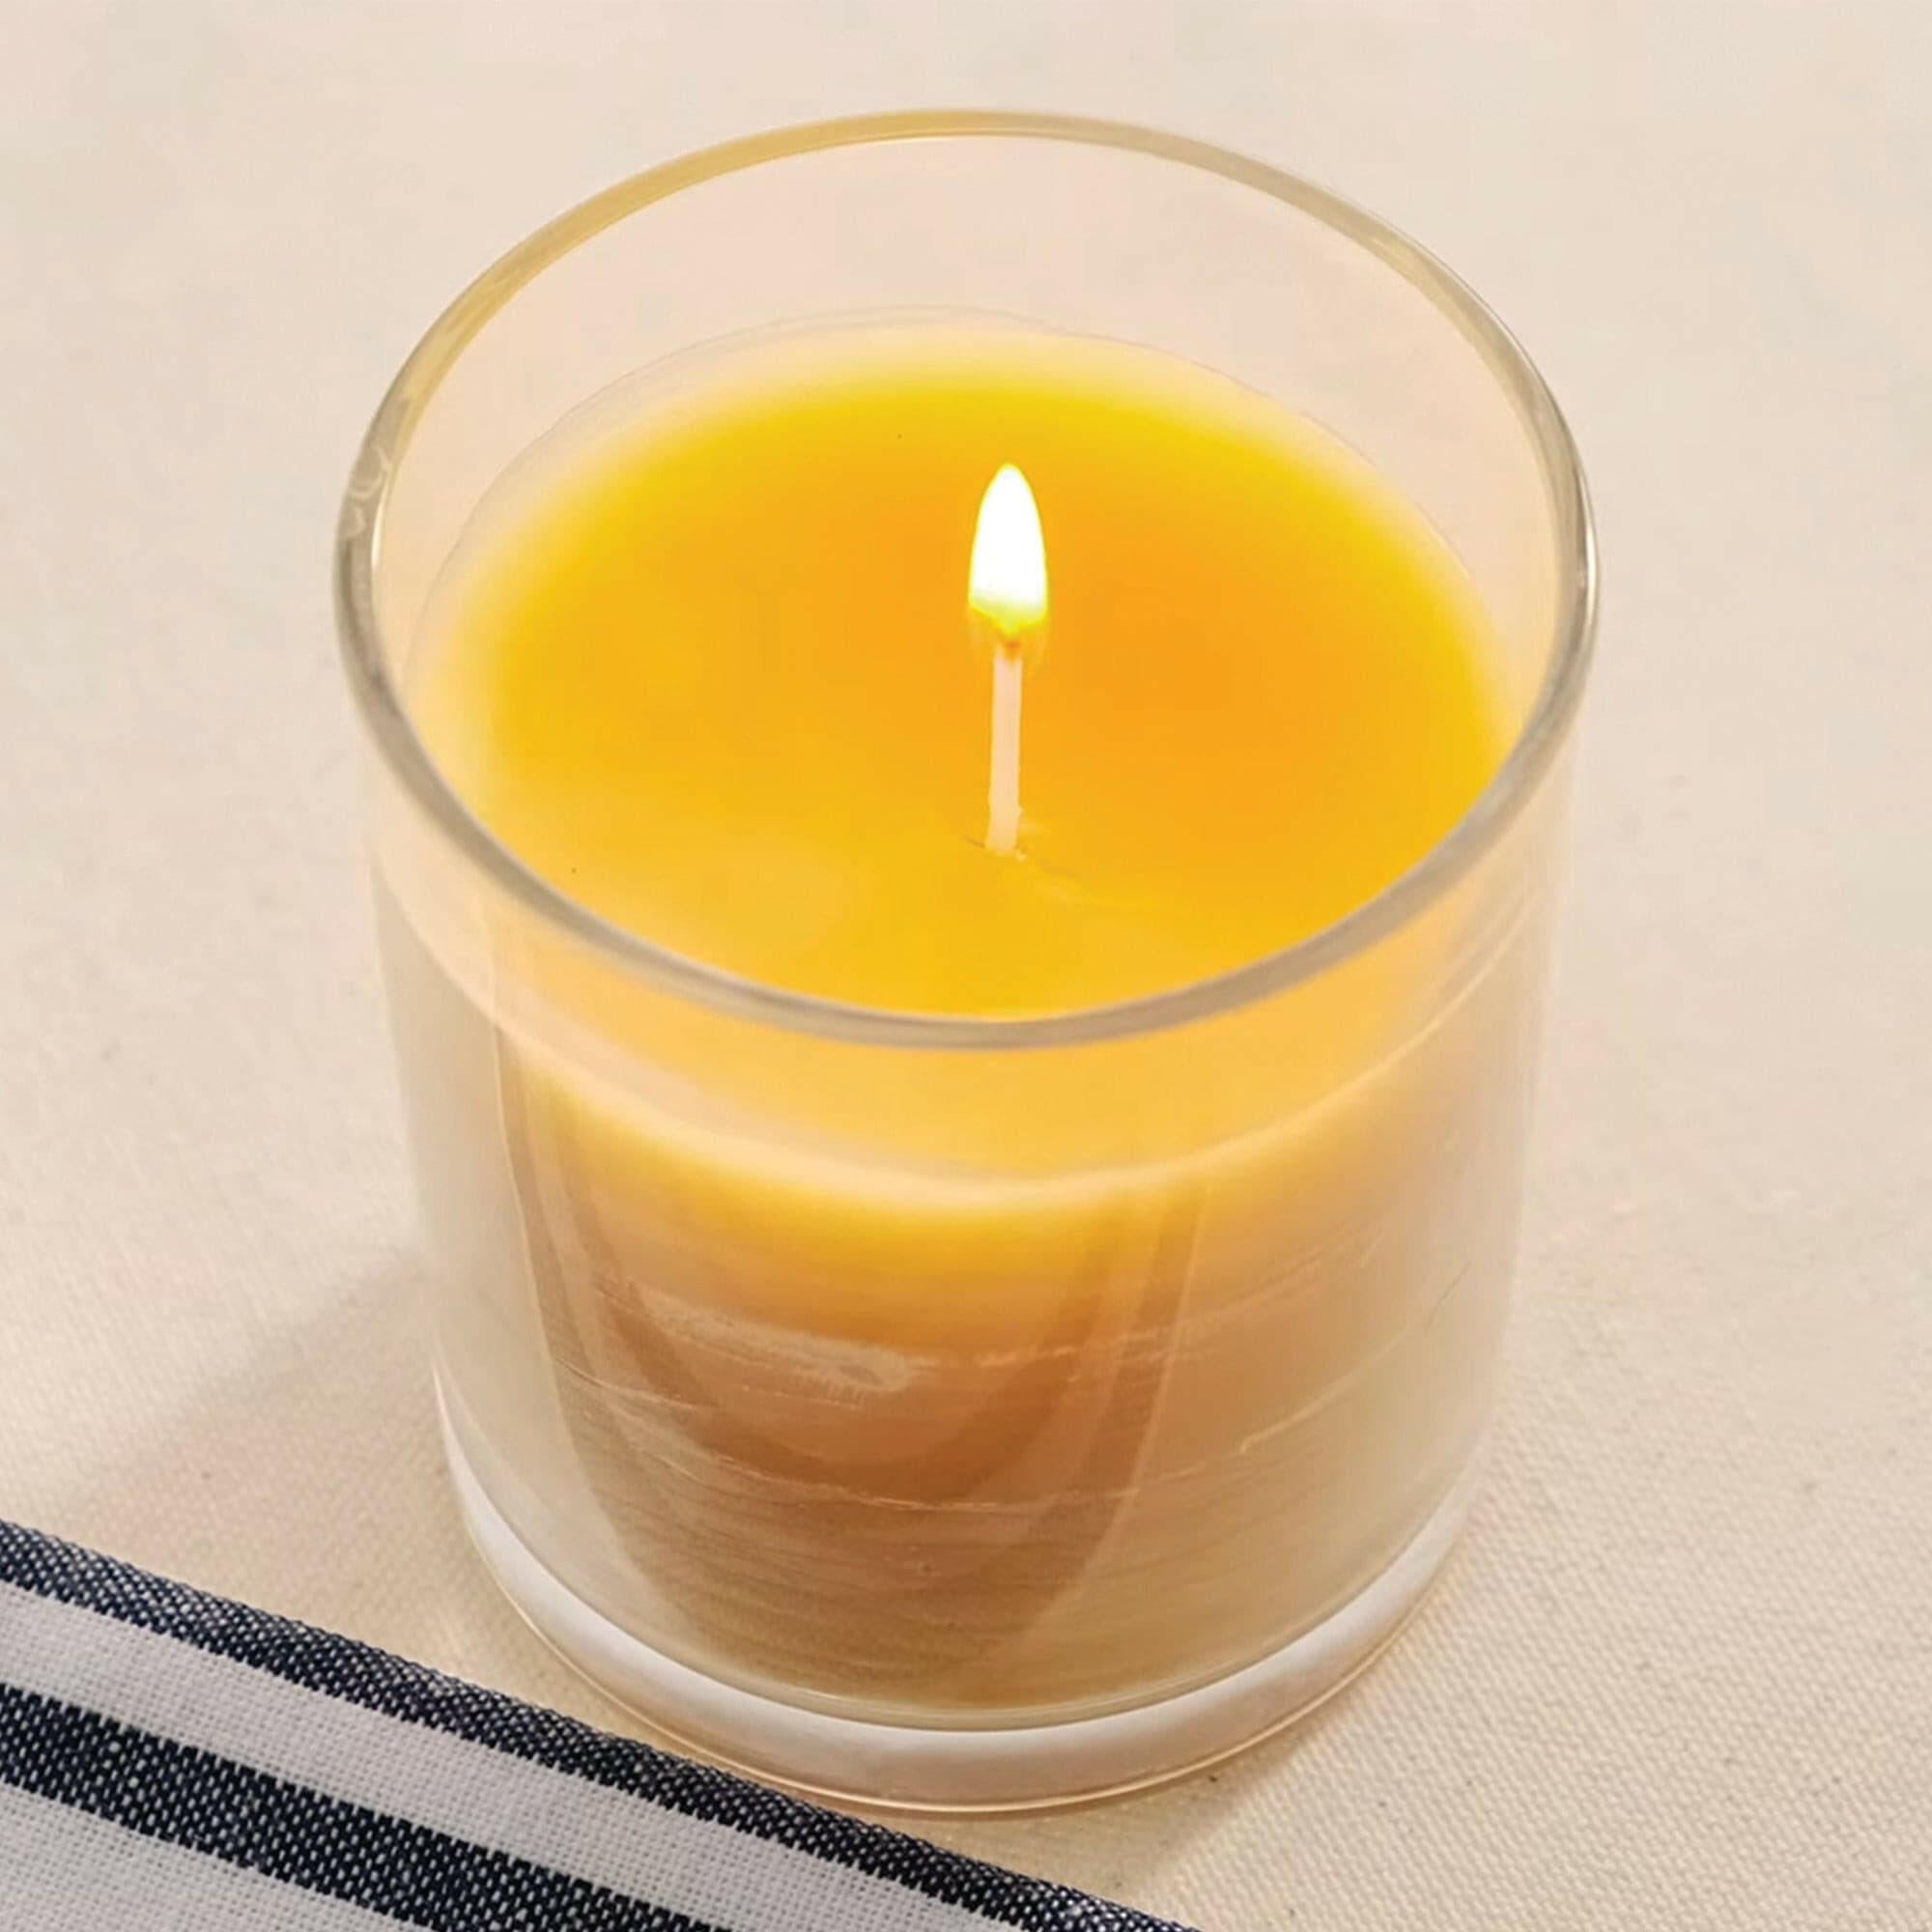 Abeeswax - kit per la produzione di candele